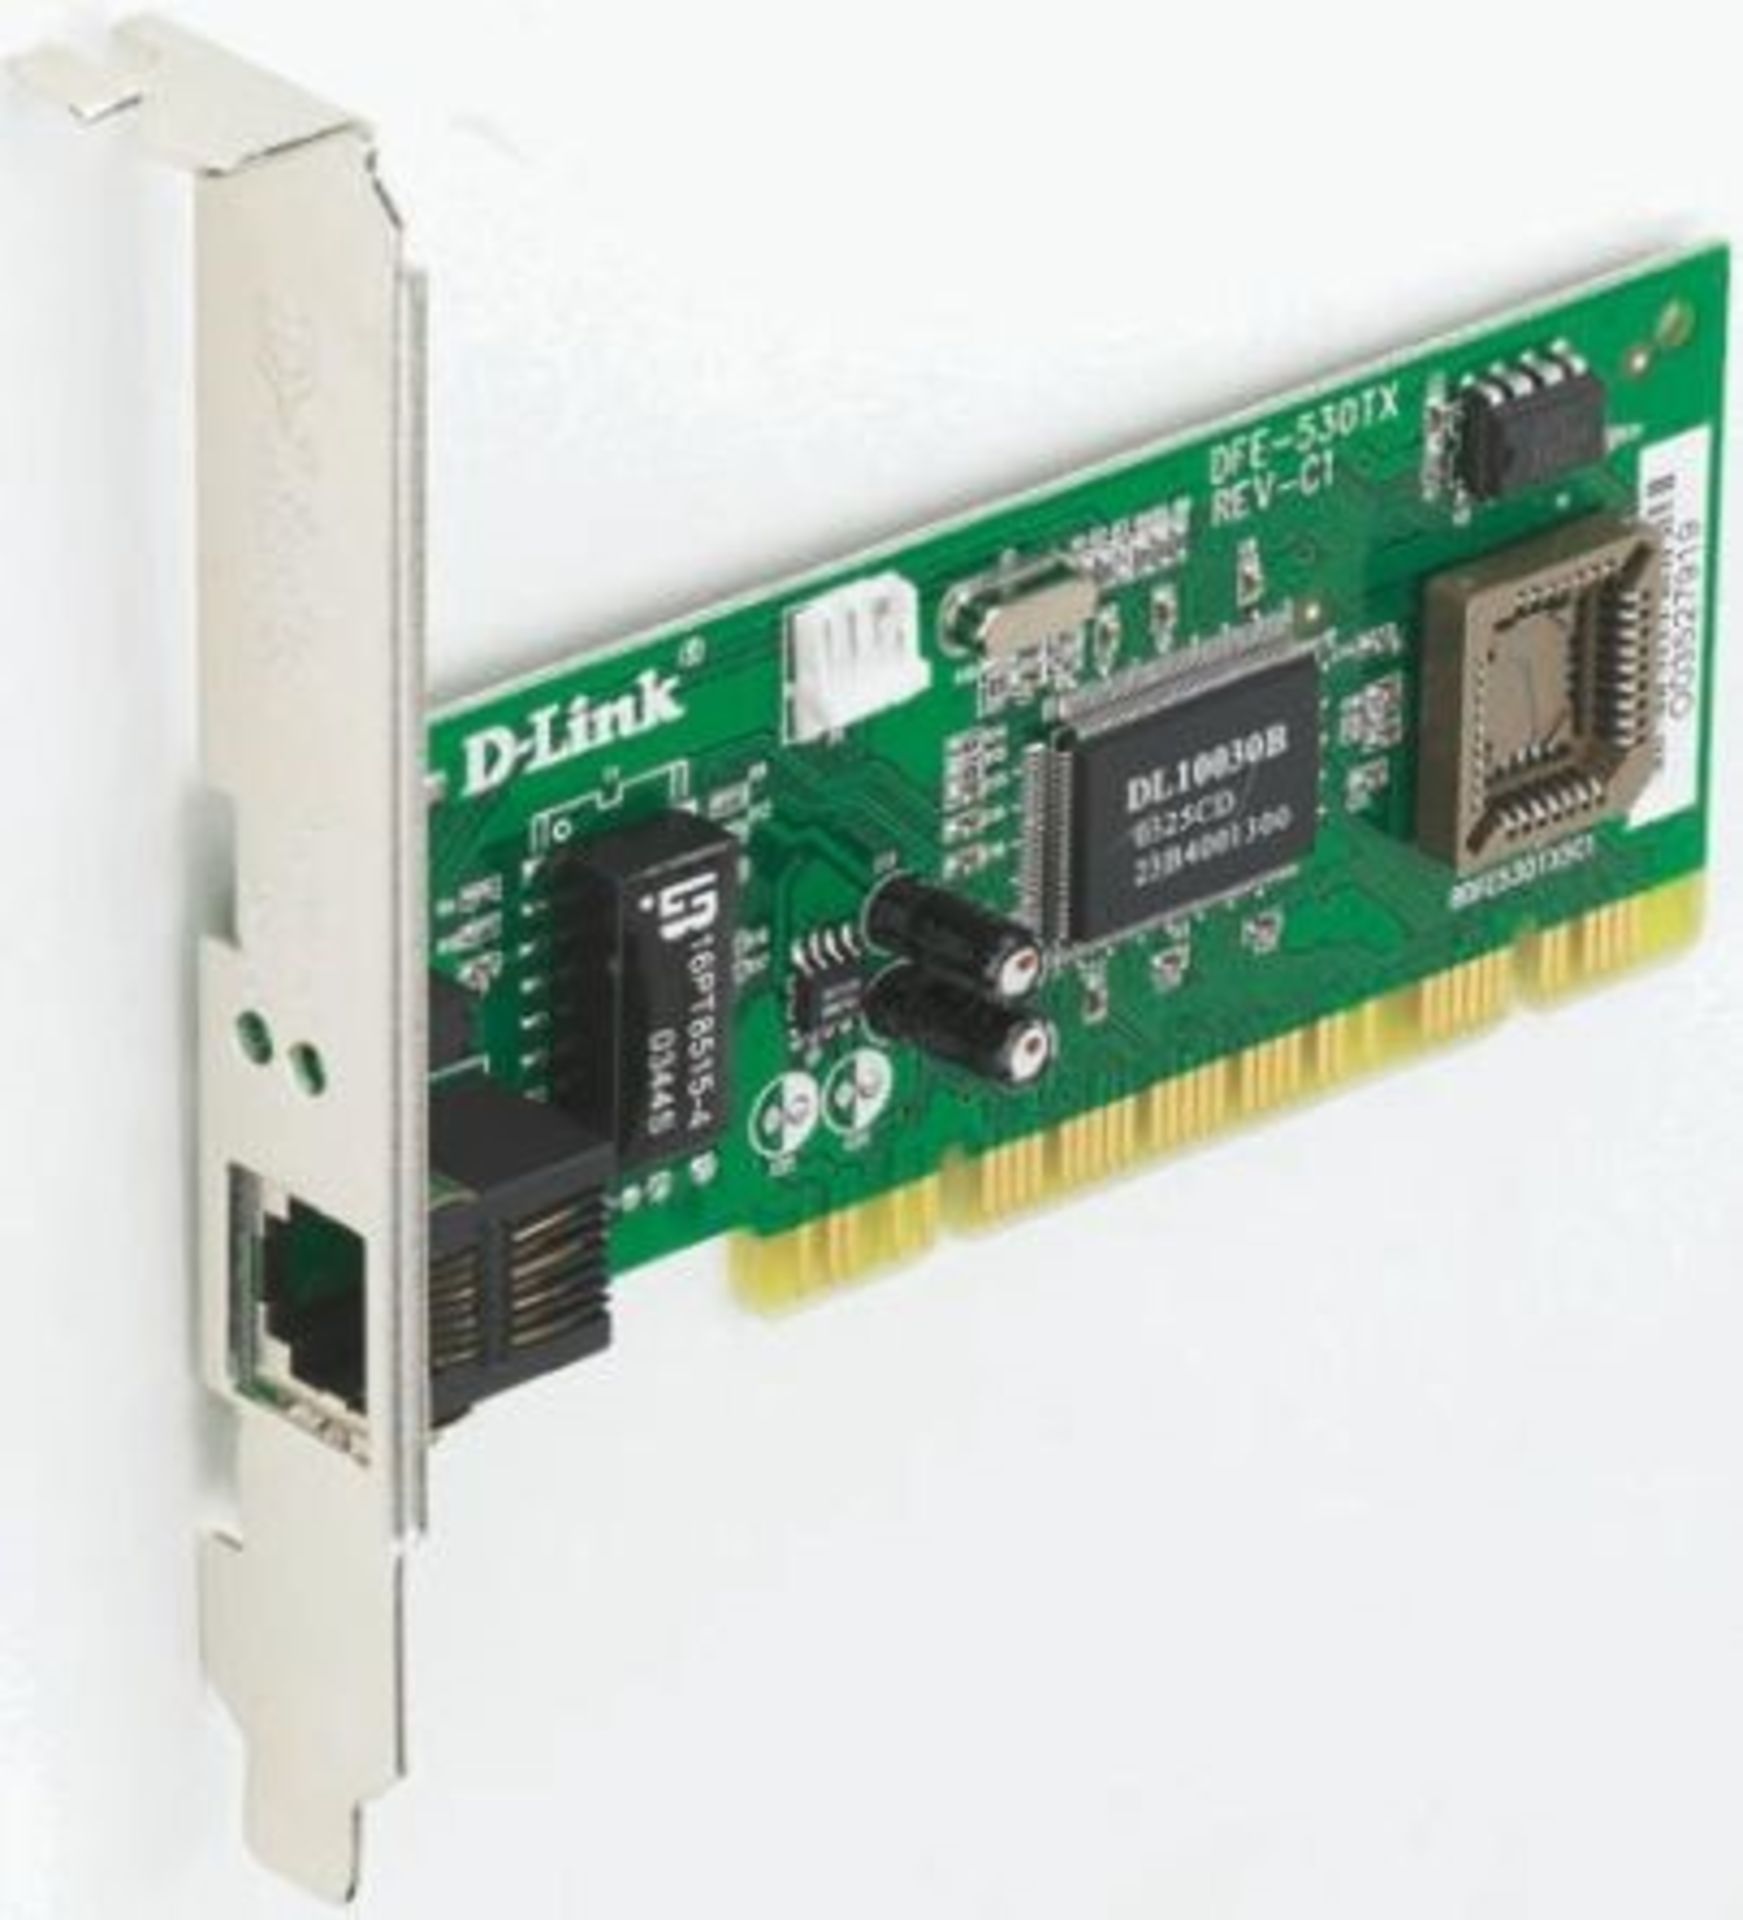 20 x D-Link Network Interface Card DLIF530TX